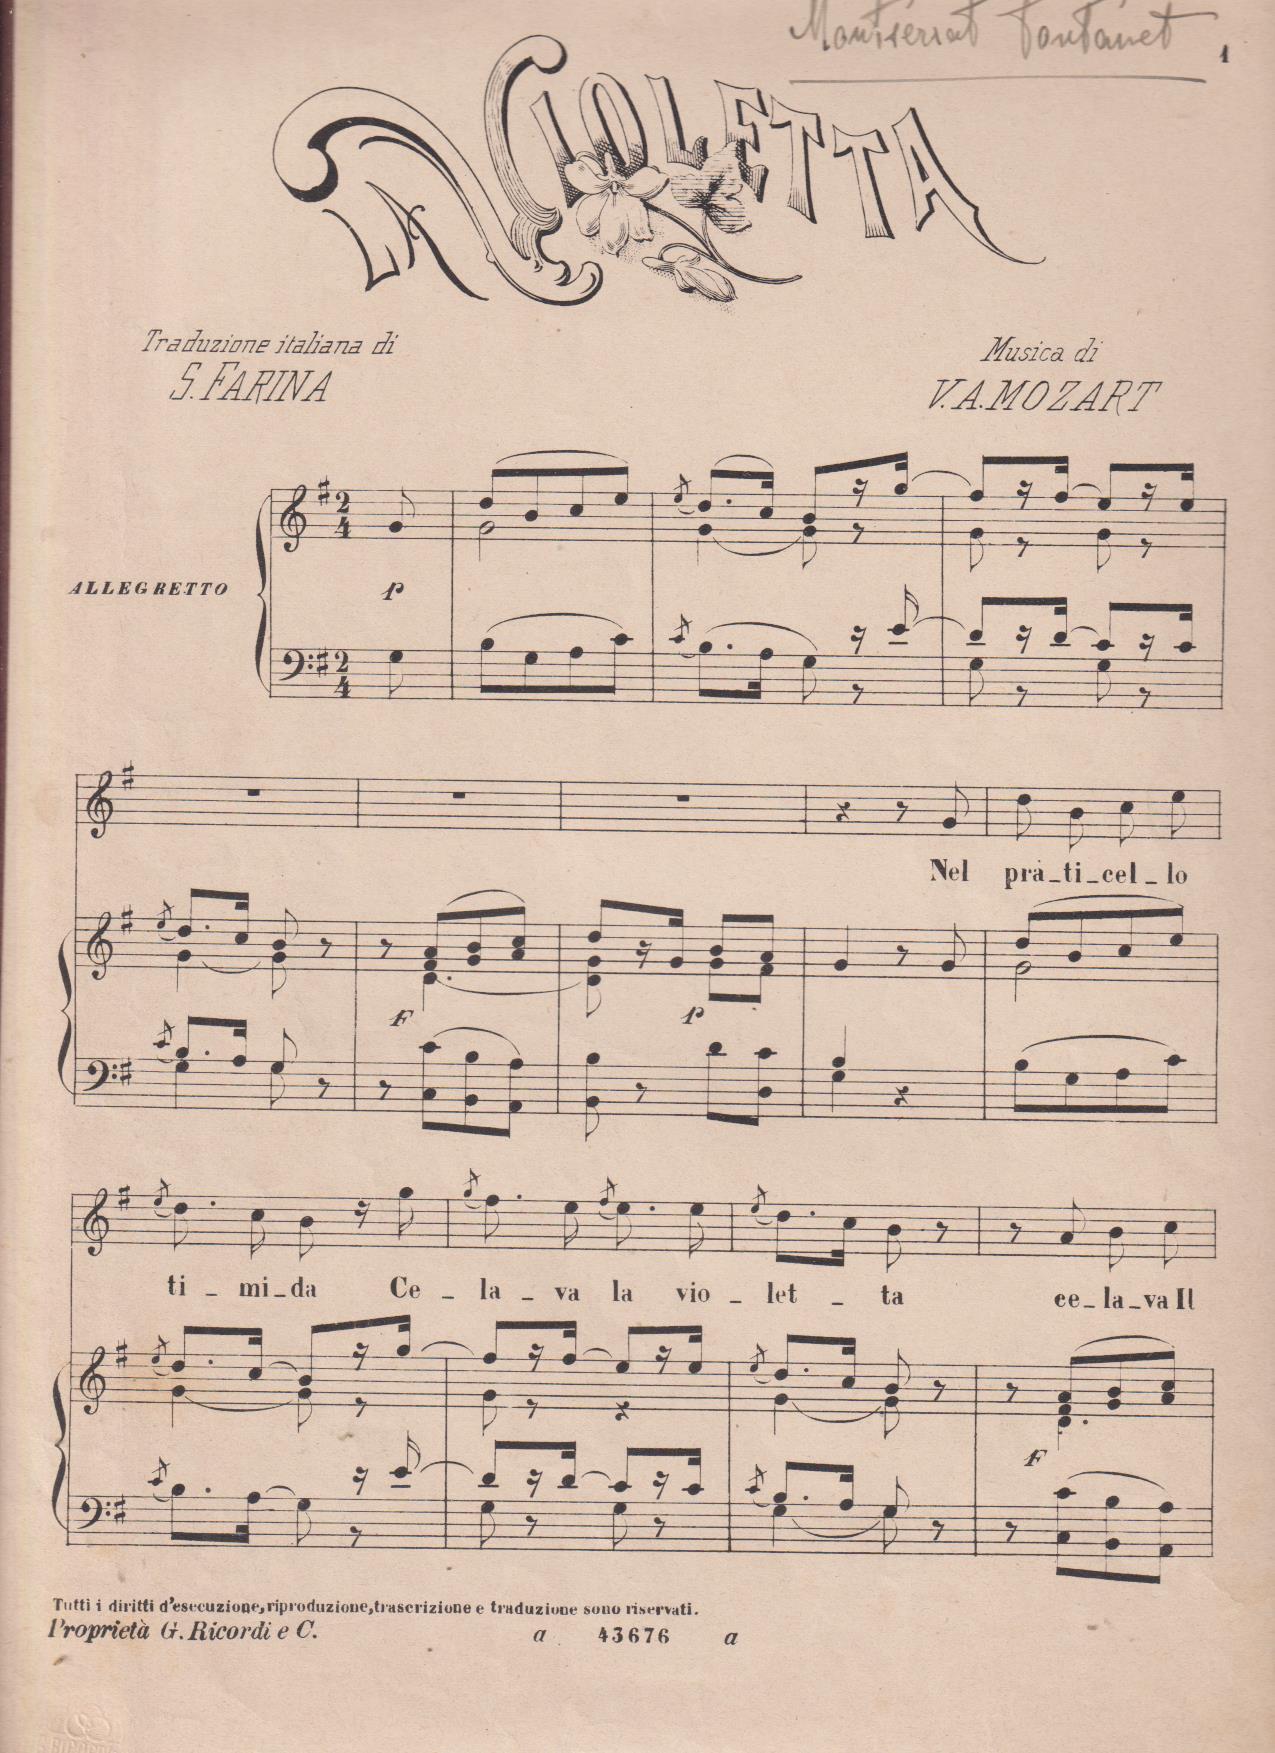 La Violetta. Música di V. A. Mozart. Firma de Montserrat Fontanet. Última Hoja, Besos de maja